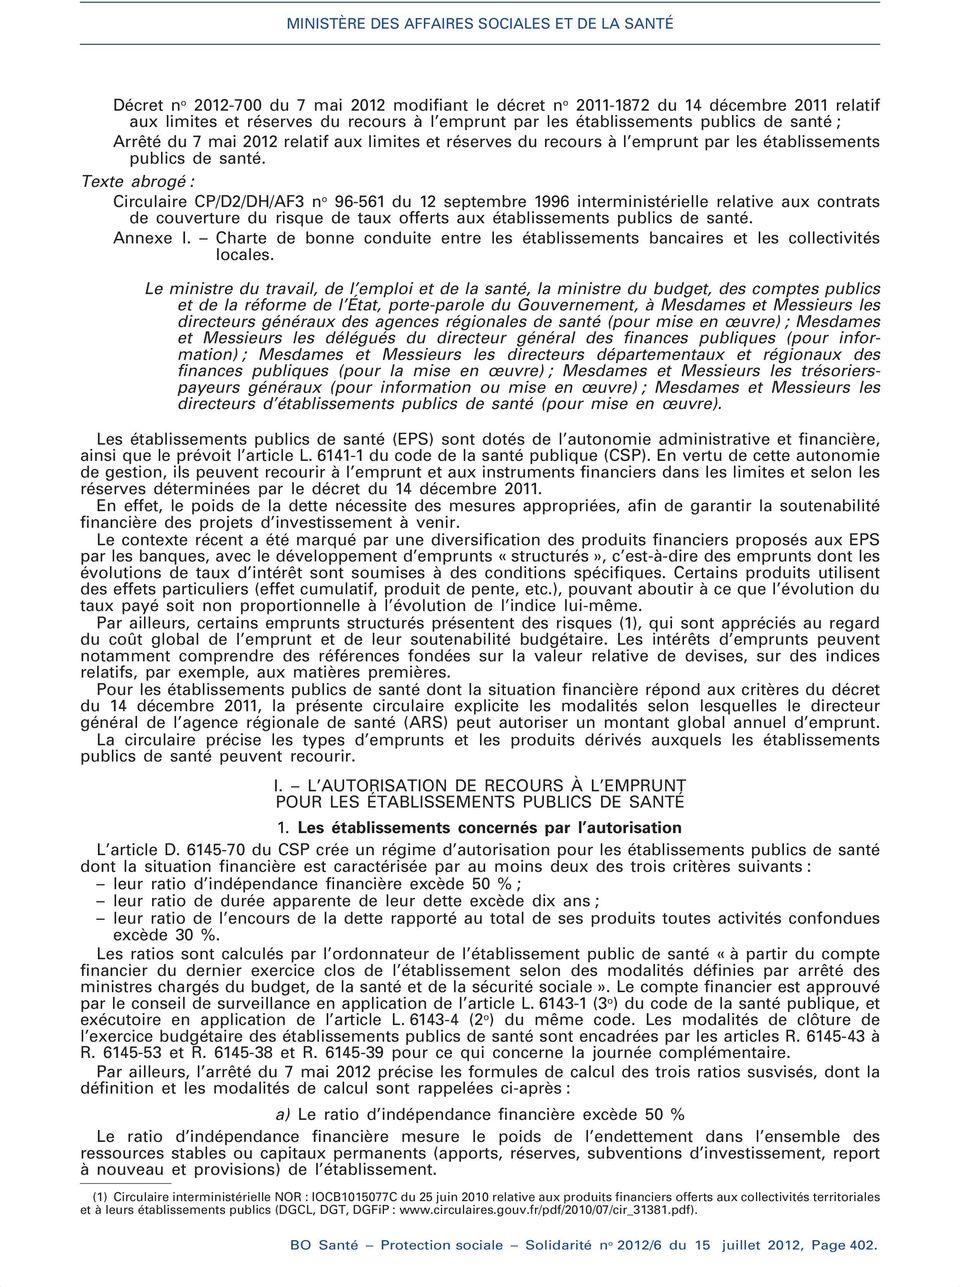 Texte abrogé : Circulaire CP/D2/DH/AF3 n o 96-561 du 12 septembre 1996 interministérielle relative aux contrats de couverture du risque de taux offerts aux établissements publics de santé. Annexe I.